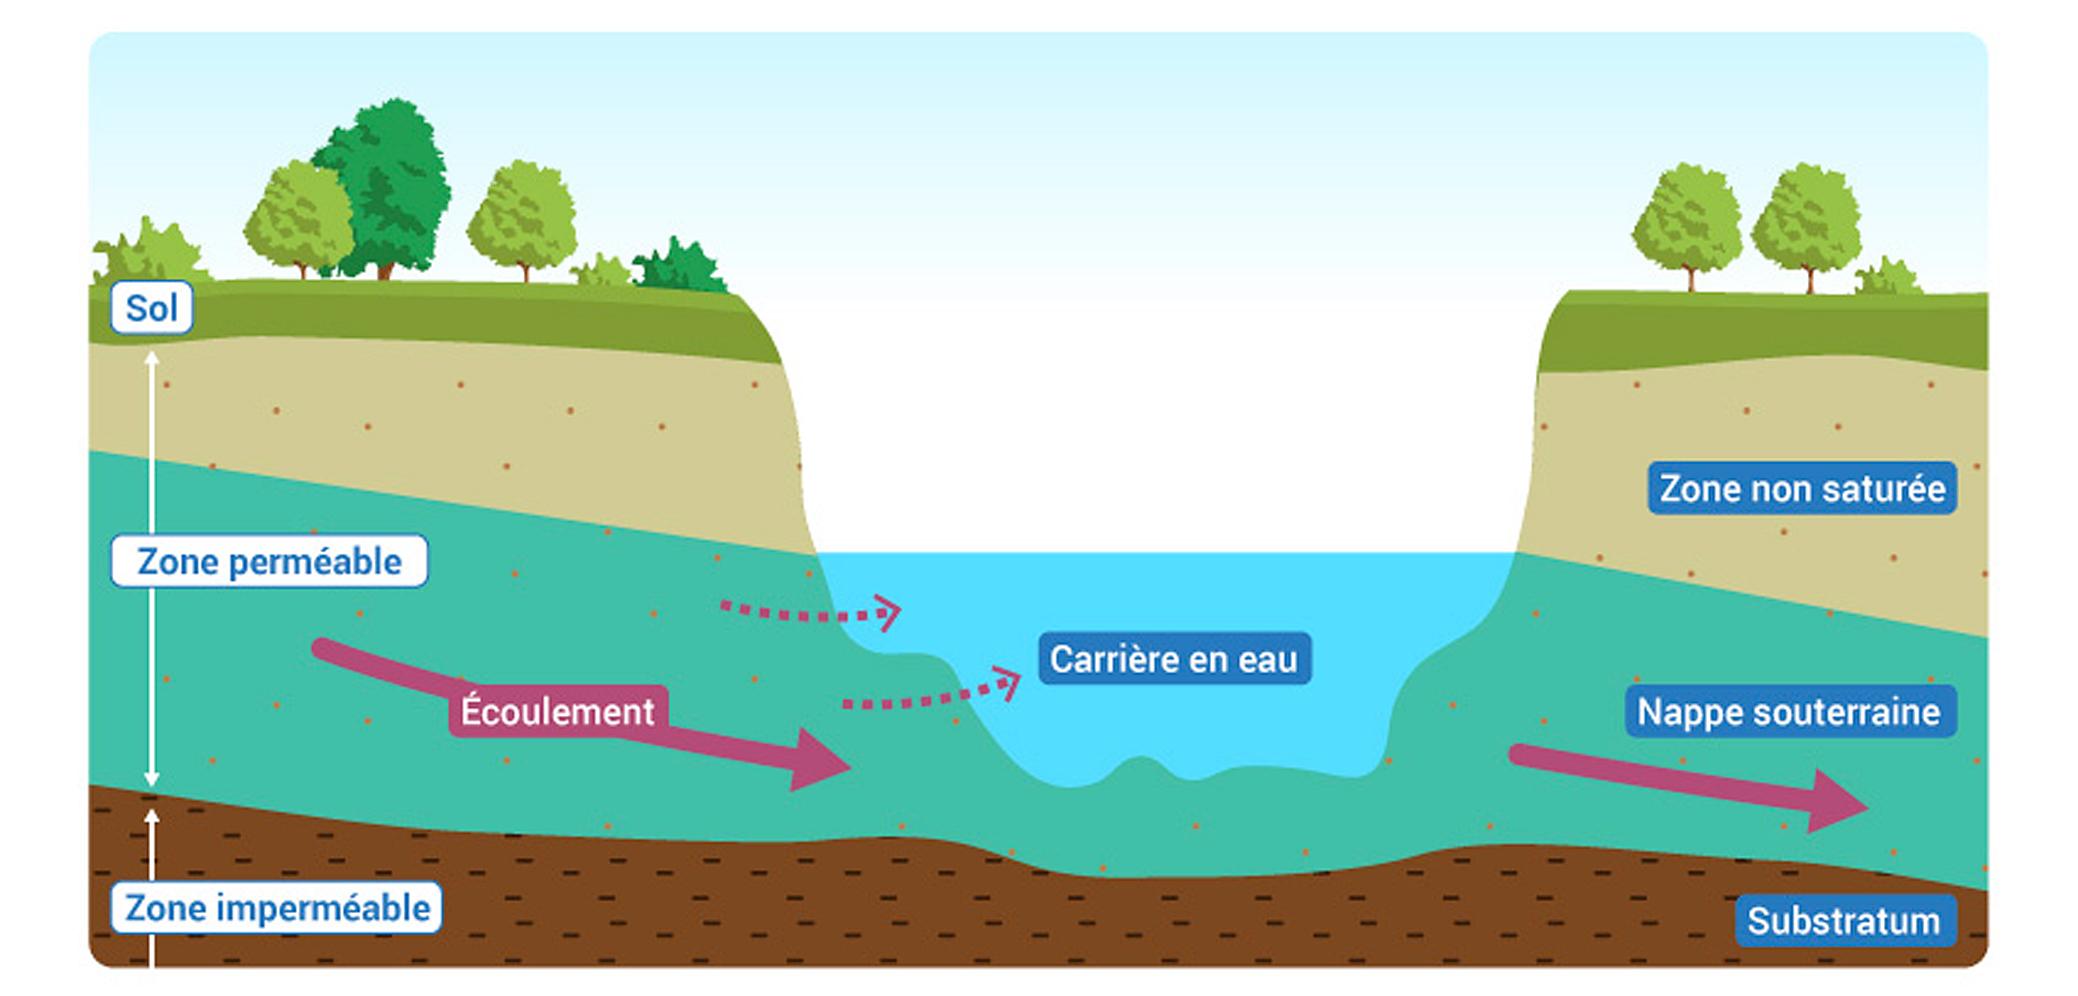 Le remplissage des carrières par les eaux souterraines